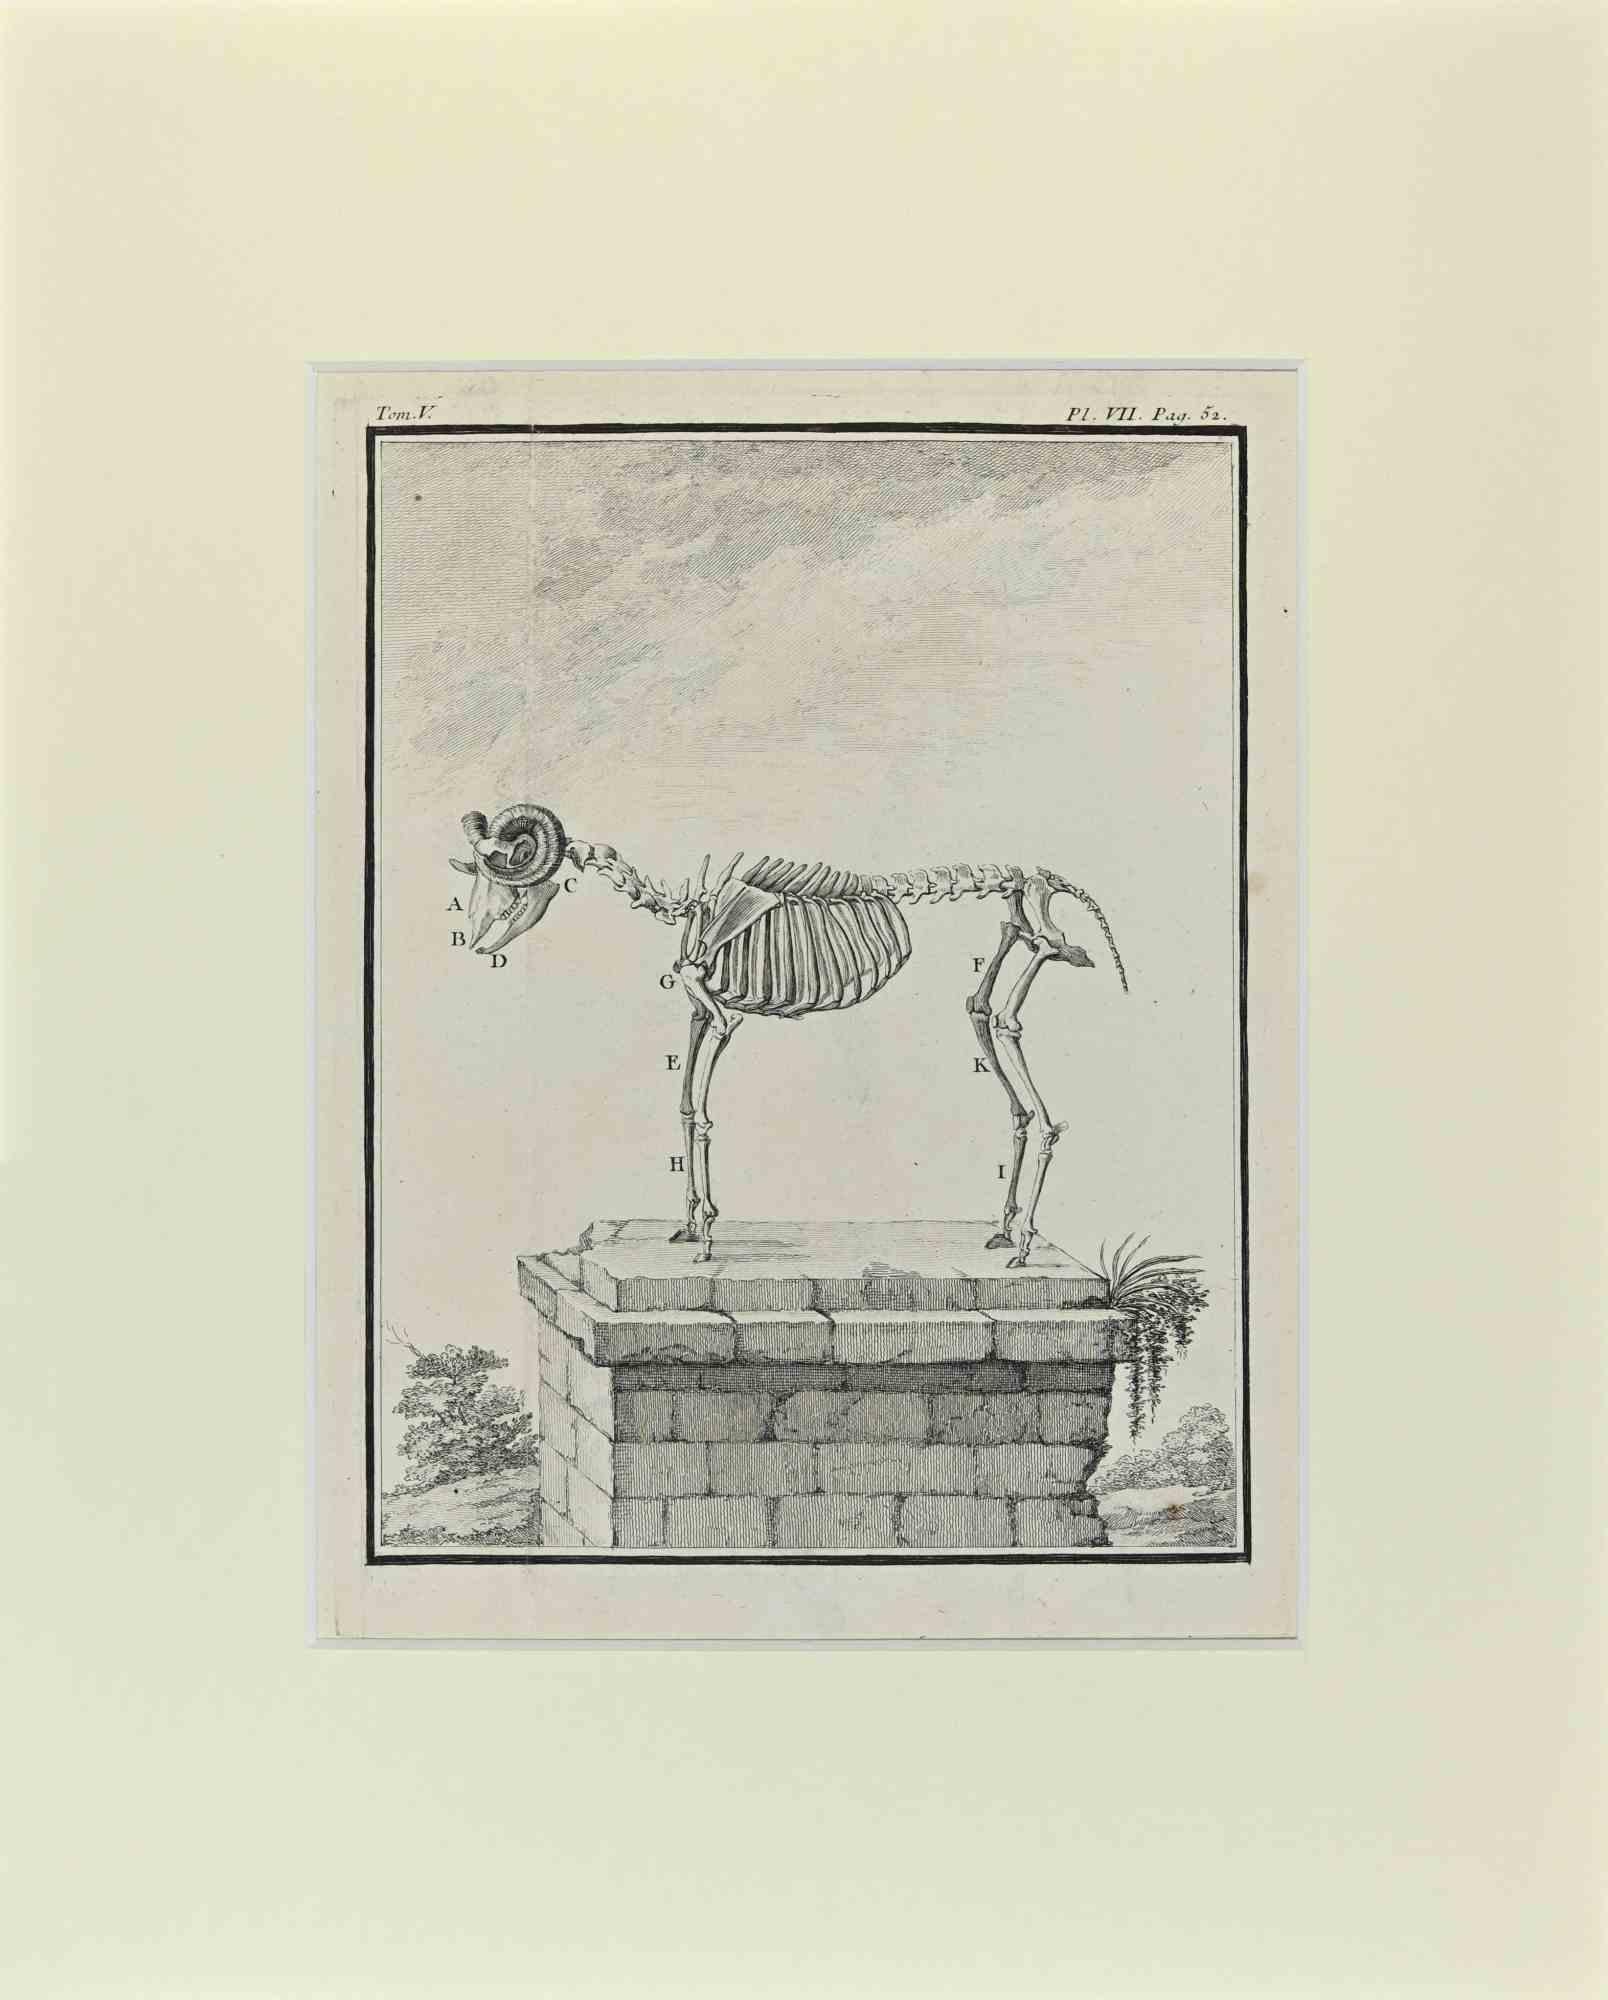 Le Squelette de mouton est une œuvre d'art réalisée par Buvée l'Américain en 1771.  

Gravure à l'eau-forte B./W. sur papier ivoire. Signé sur la plaque dans la marge inférieure gauche.

L'œuvre est collée sur du carton. Dimensions totales : 35x28